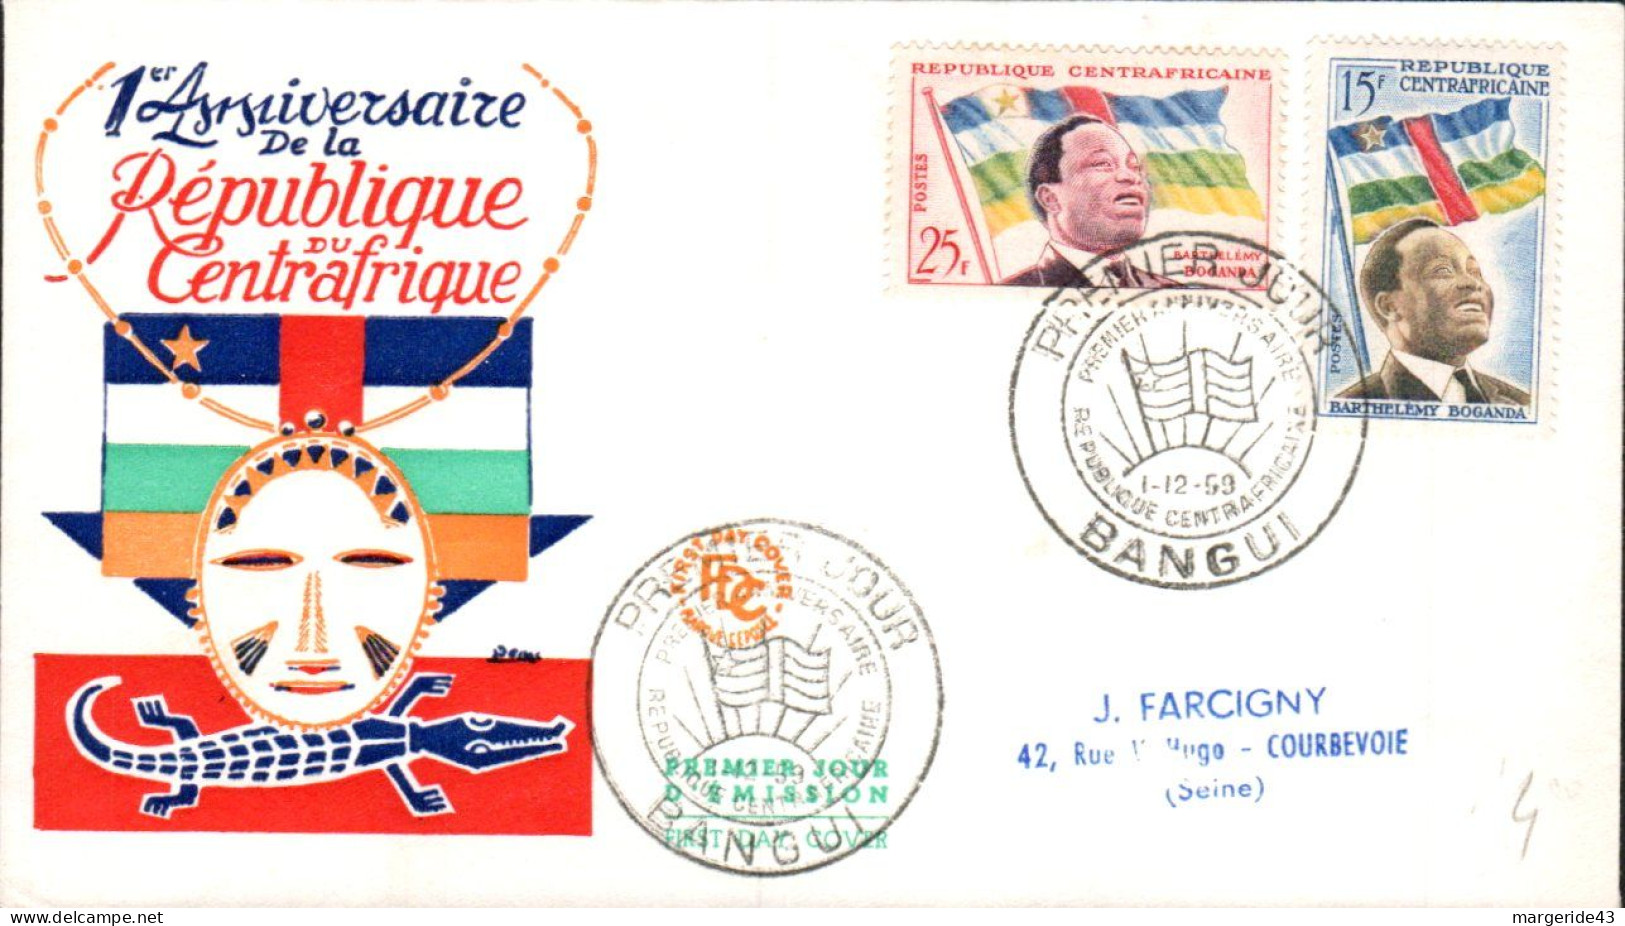 CENTRAFRIQUE FDC 1959 UN AN REPUBLIQUE - República Centroafricana